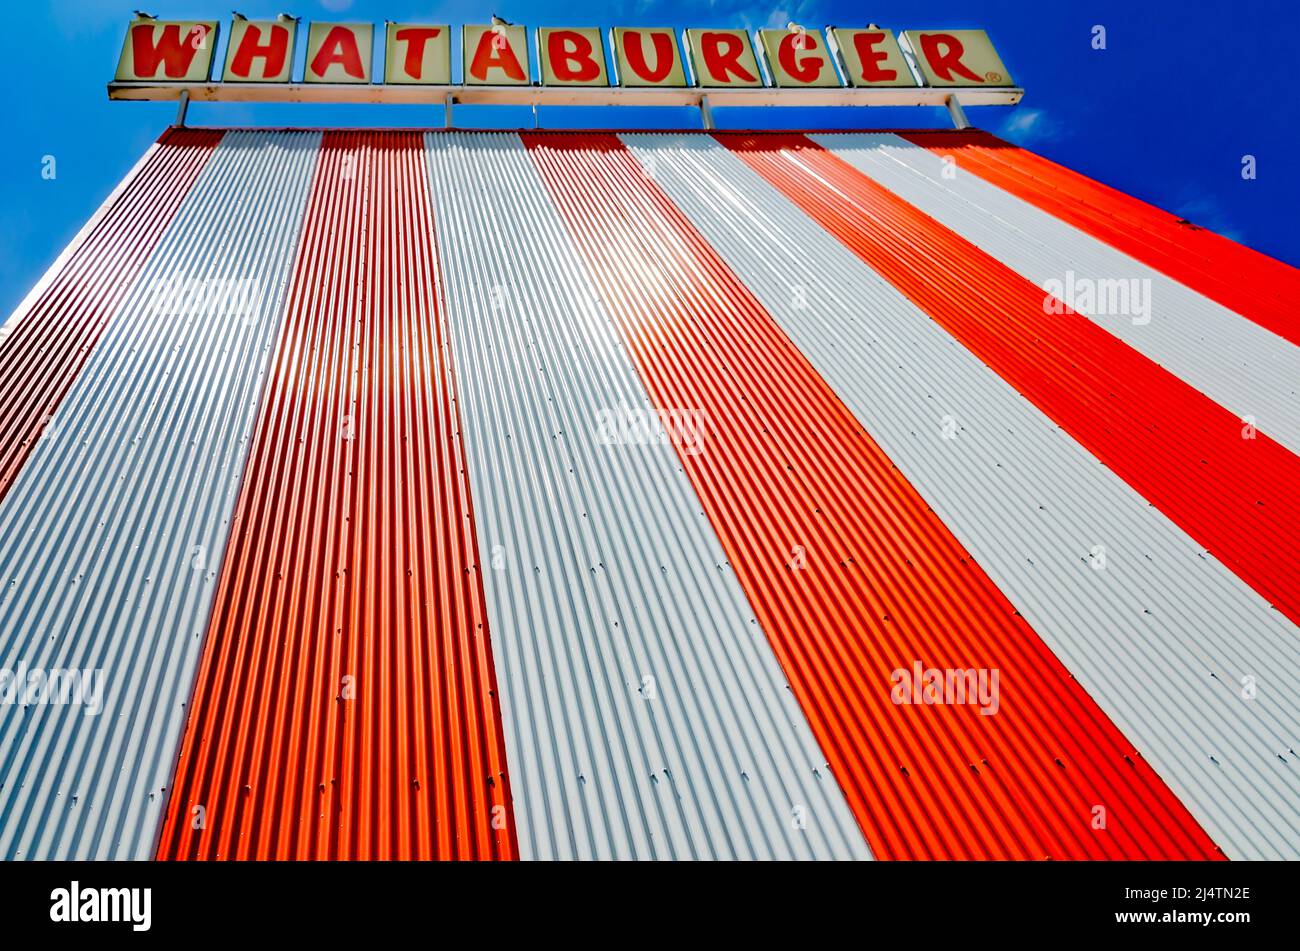 Le restaurant classique à cadre En A de Whataburger est photographié, le 15 avril 2022, à Mobile, Alabama. La chaîne de restauration rapide américaine a été fondée par Harmon Dobson. Banque D'Images